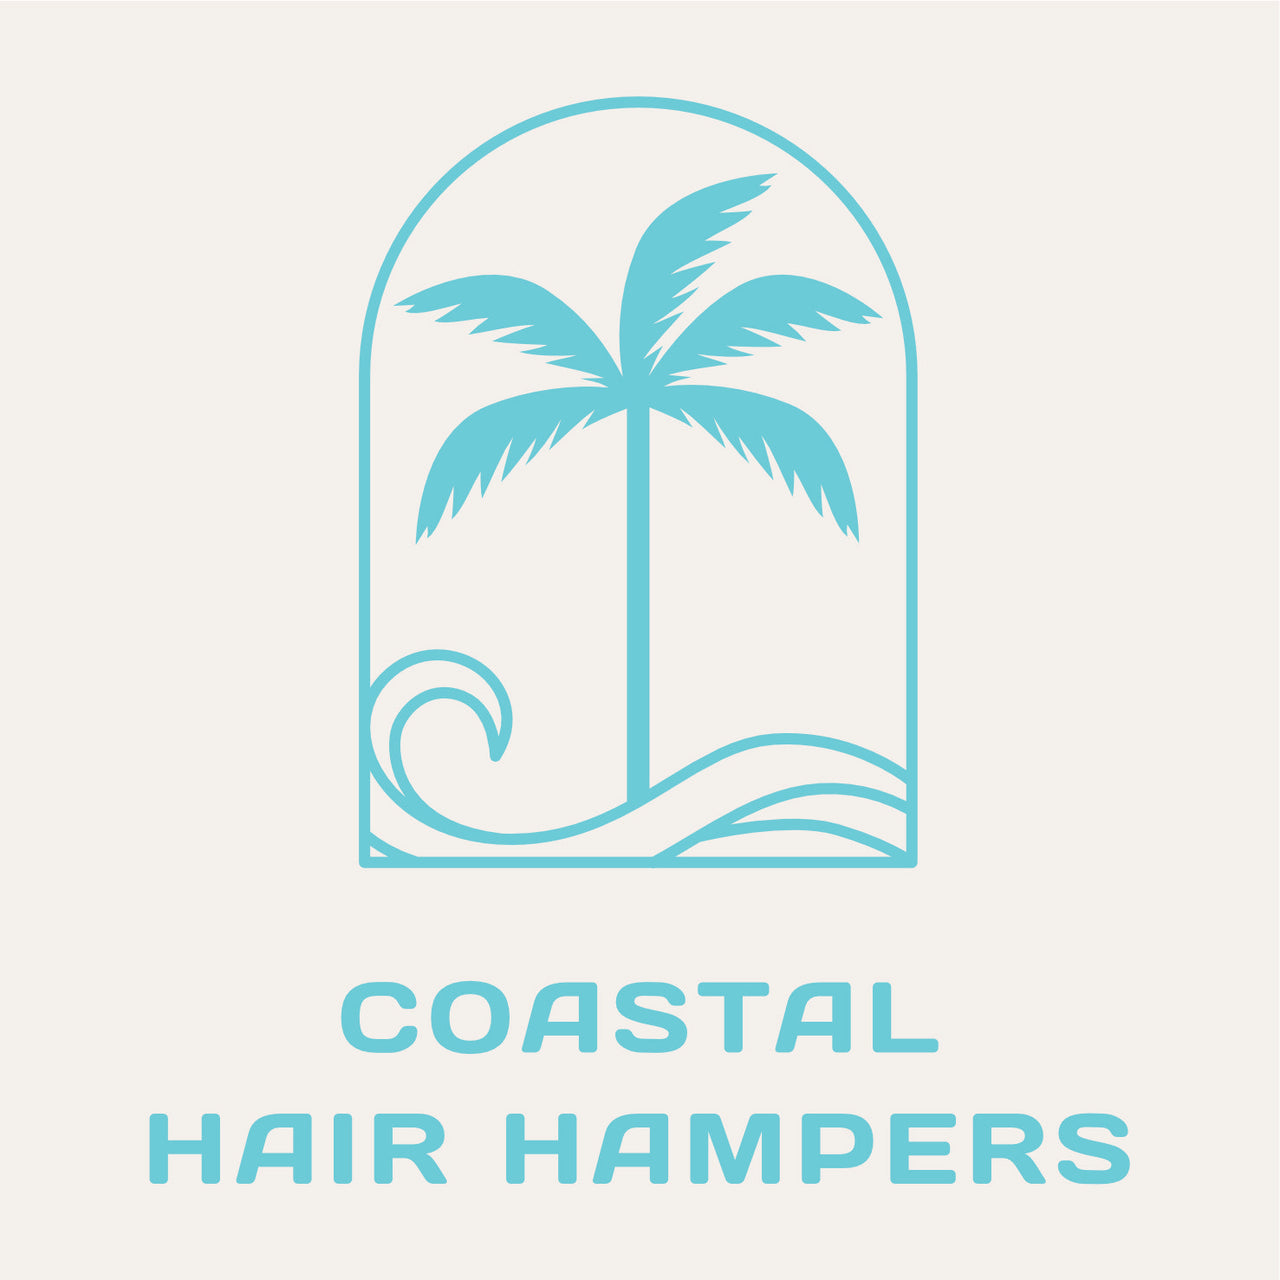 Coastal Hair Hampers